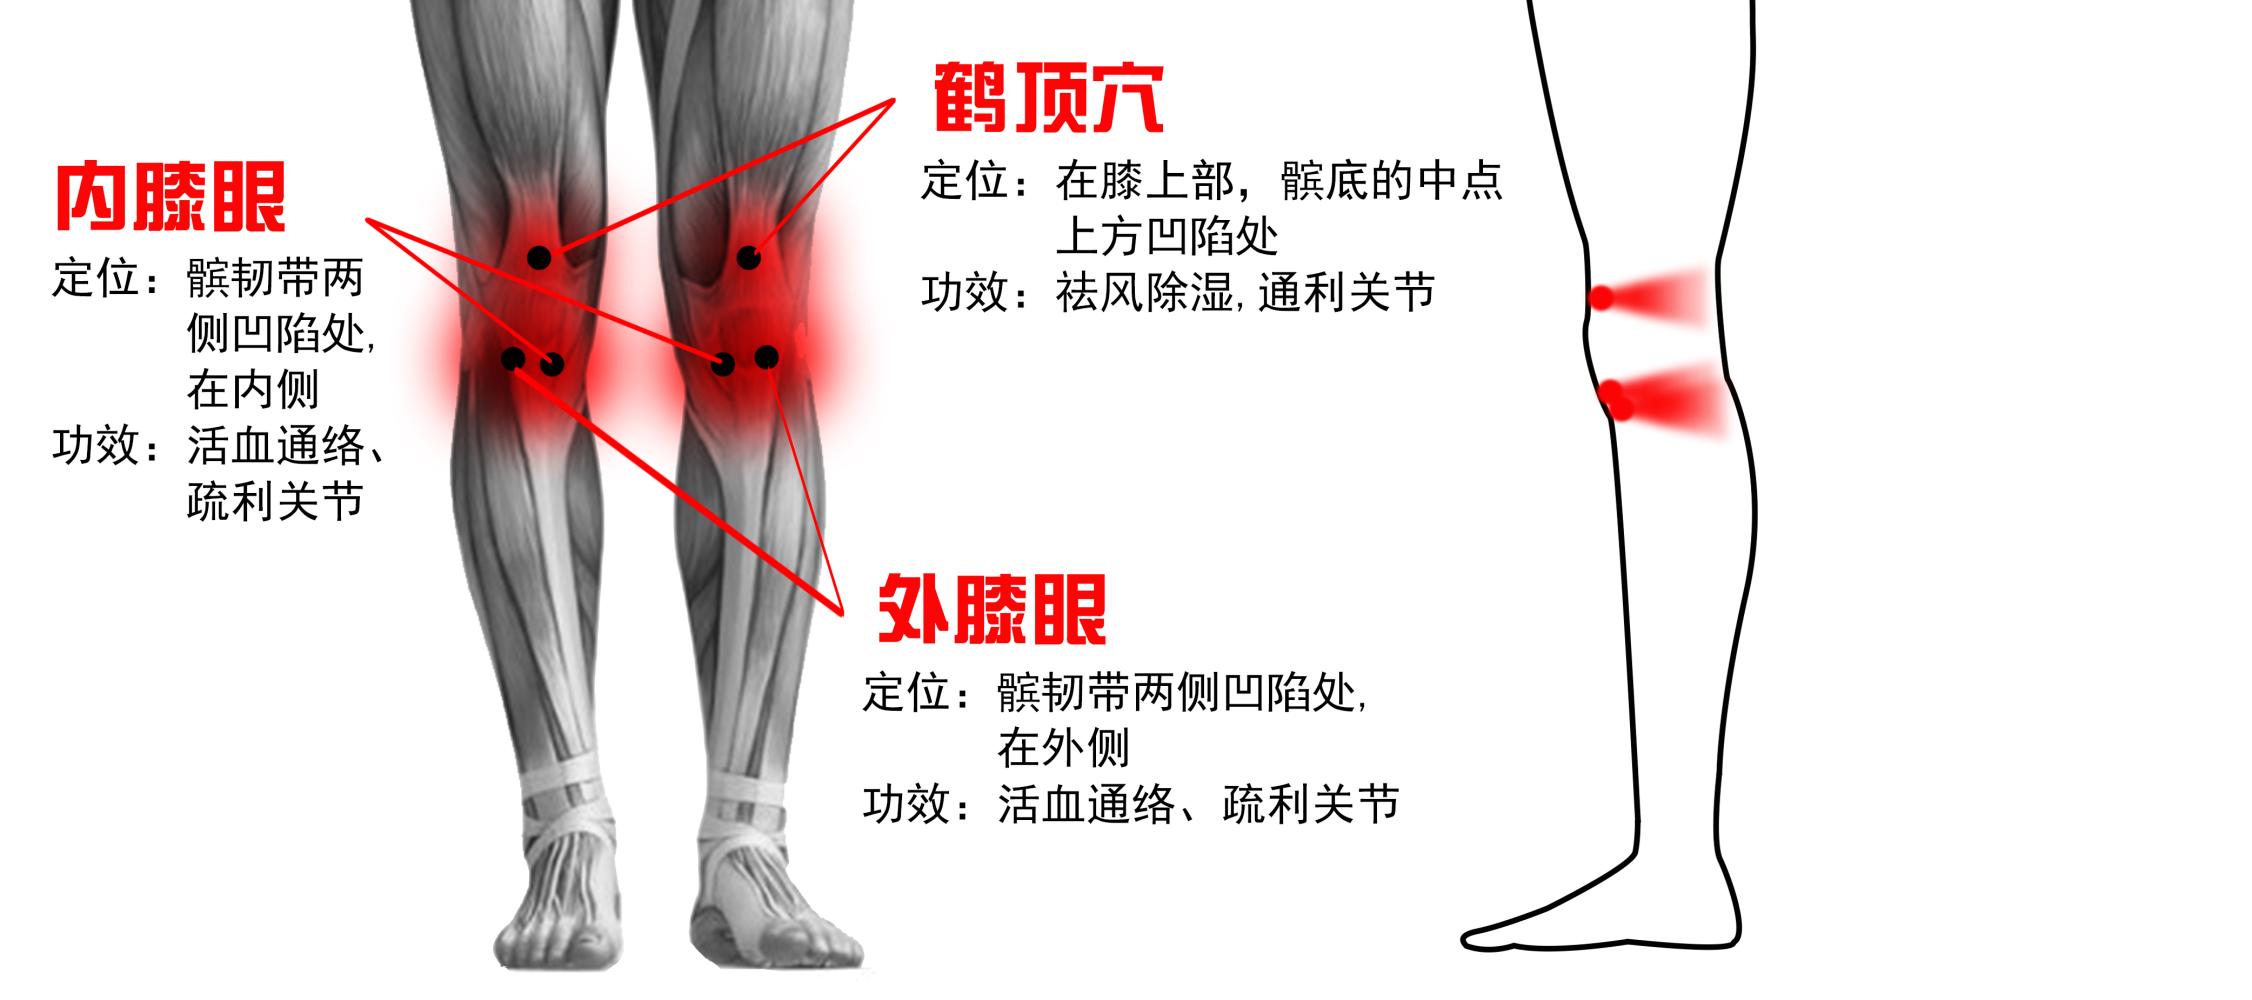 健康 正文  (2)砭灸膝关节鹤顶,内膝眼,犊鼻穴等:从关节进入的"寒湿气